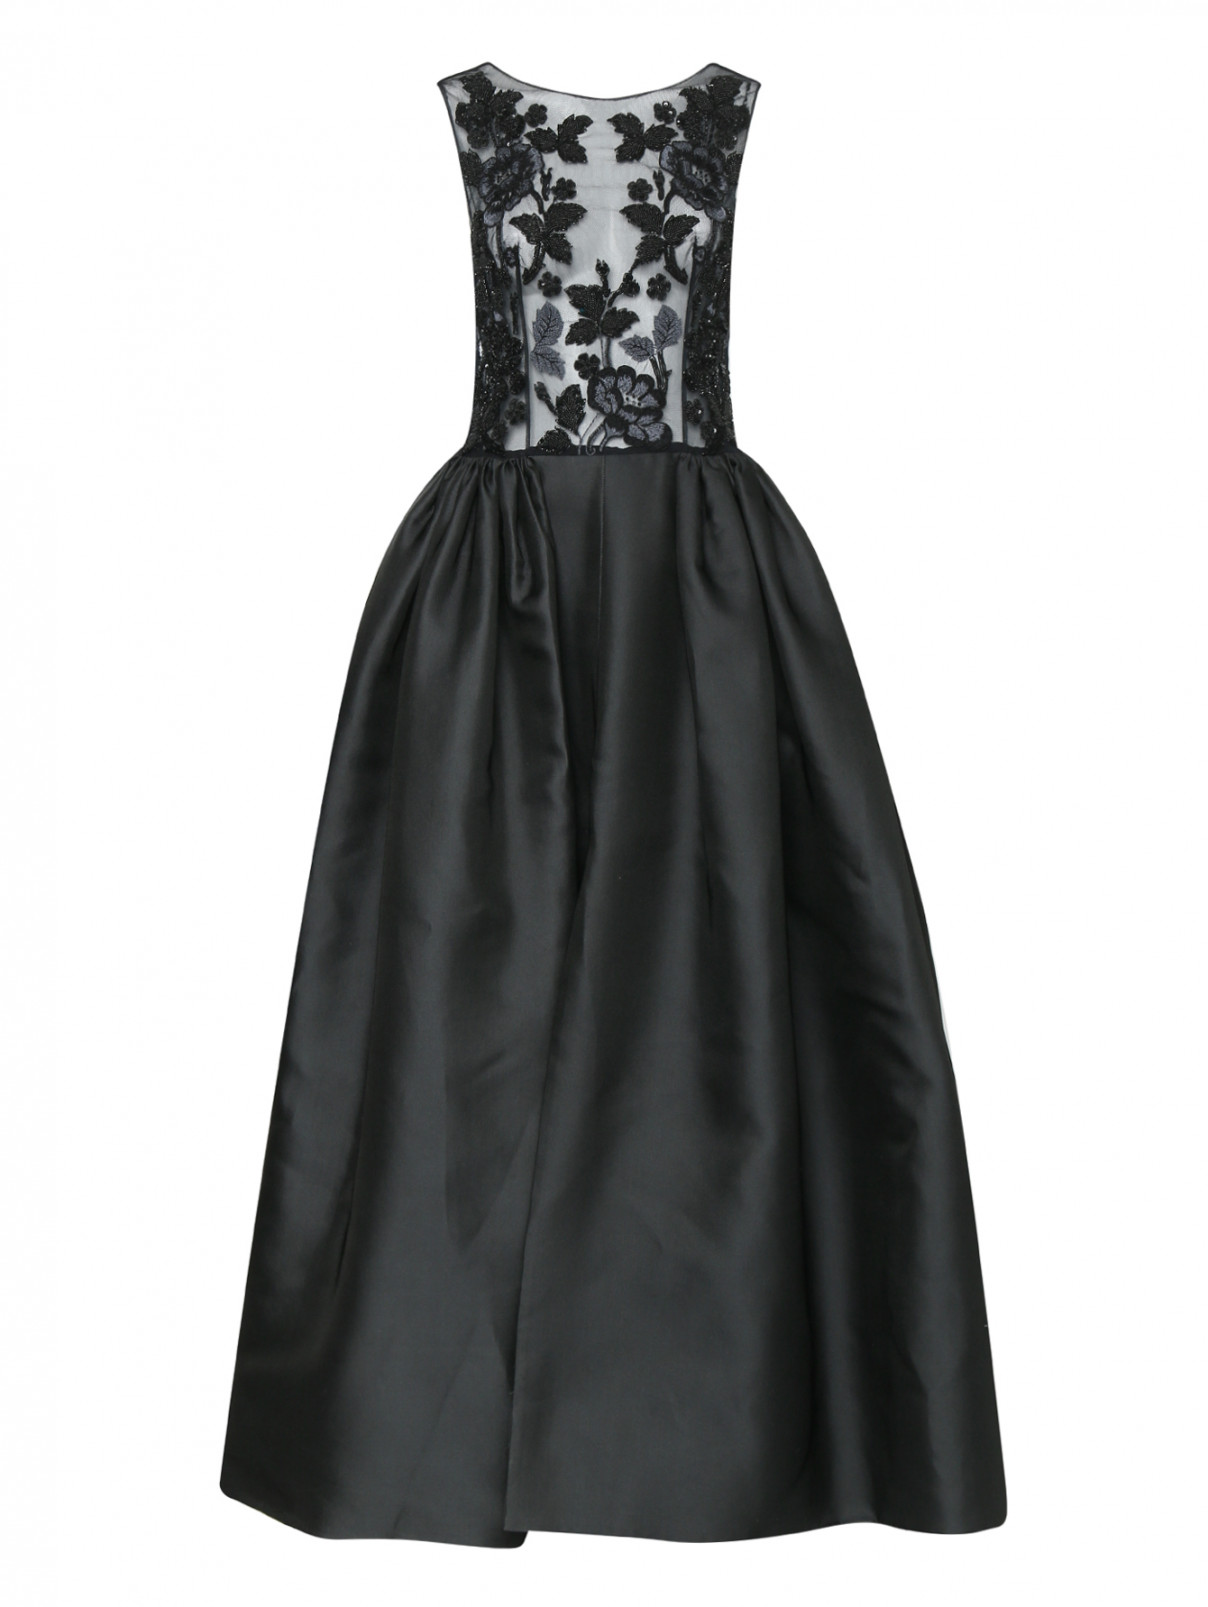 Платье-макси с декоративной вышивкой Zuhair Murad  –  Общий вид  – Цвет:  Черный